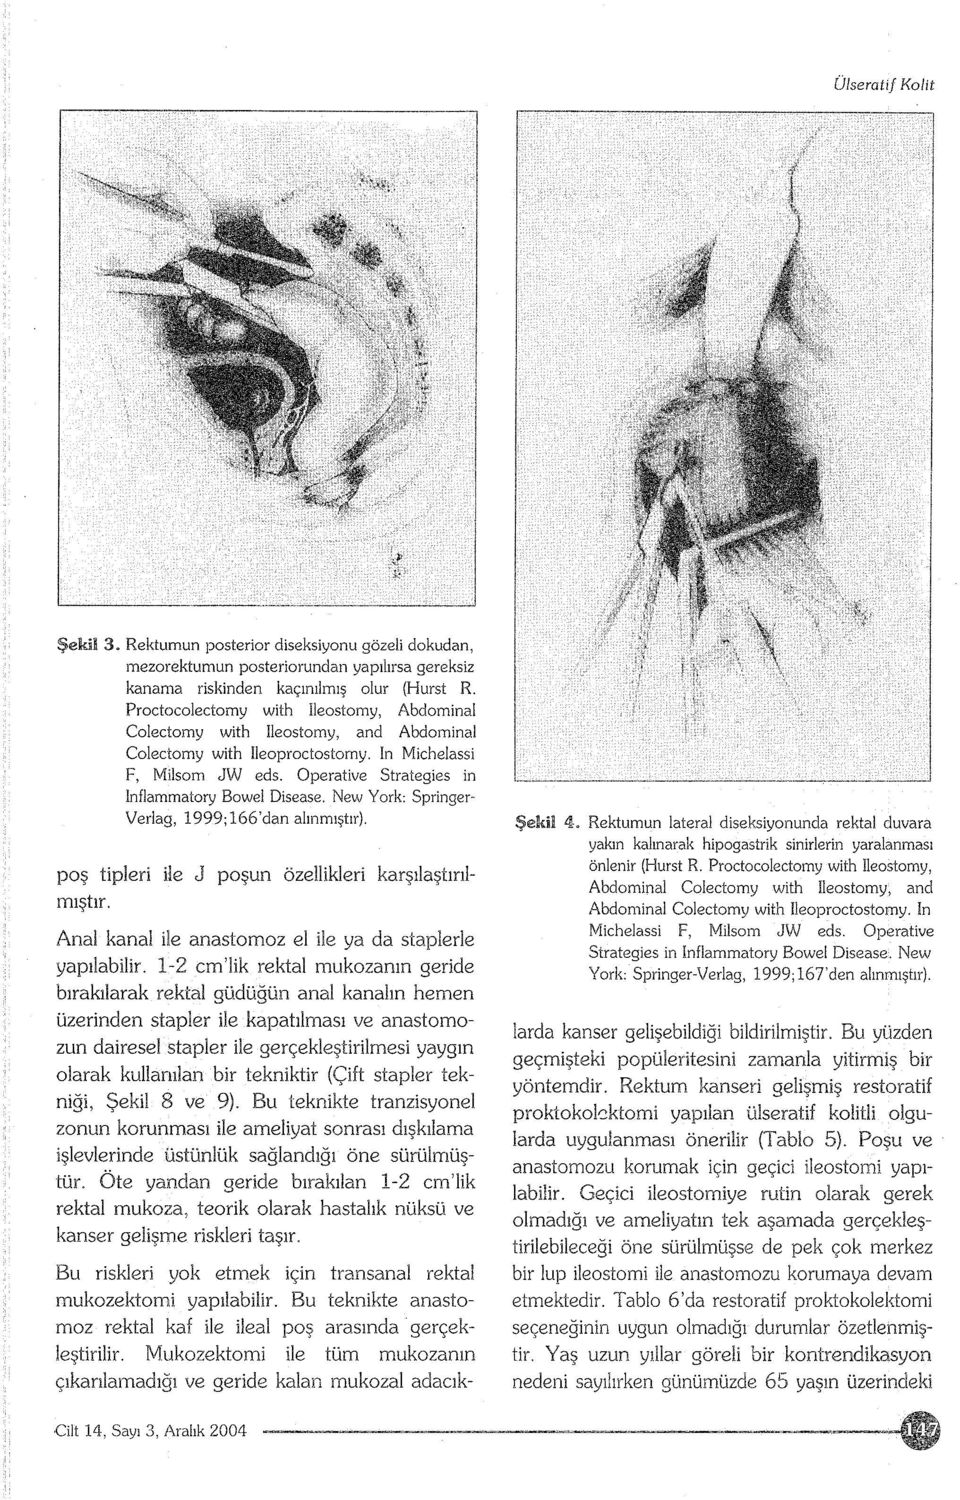 New York: Springer Verlag, 1999;166'dan alınmıştır). poş tipleri ile J poşun özellikleri karşılaştırılmıştır. Anal kanal ile anastomoz el ile ya da staplerle yapılabilir.